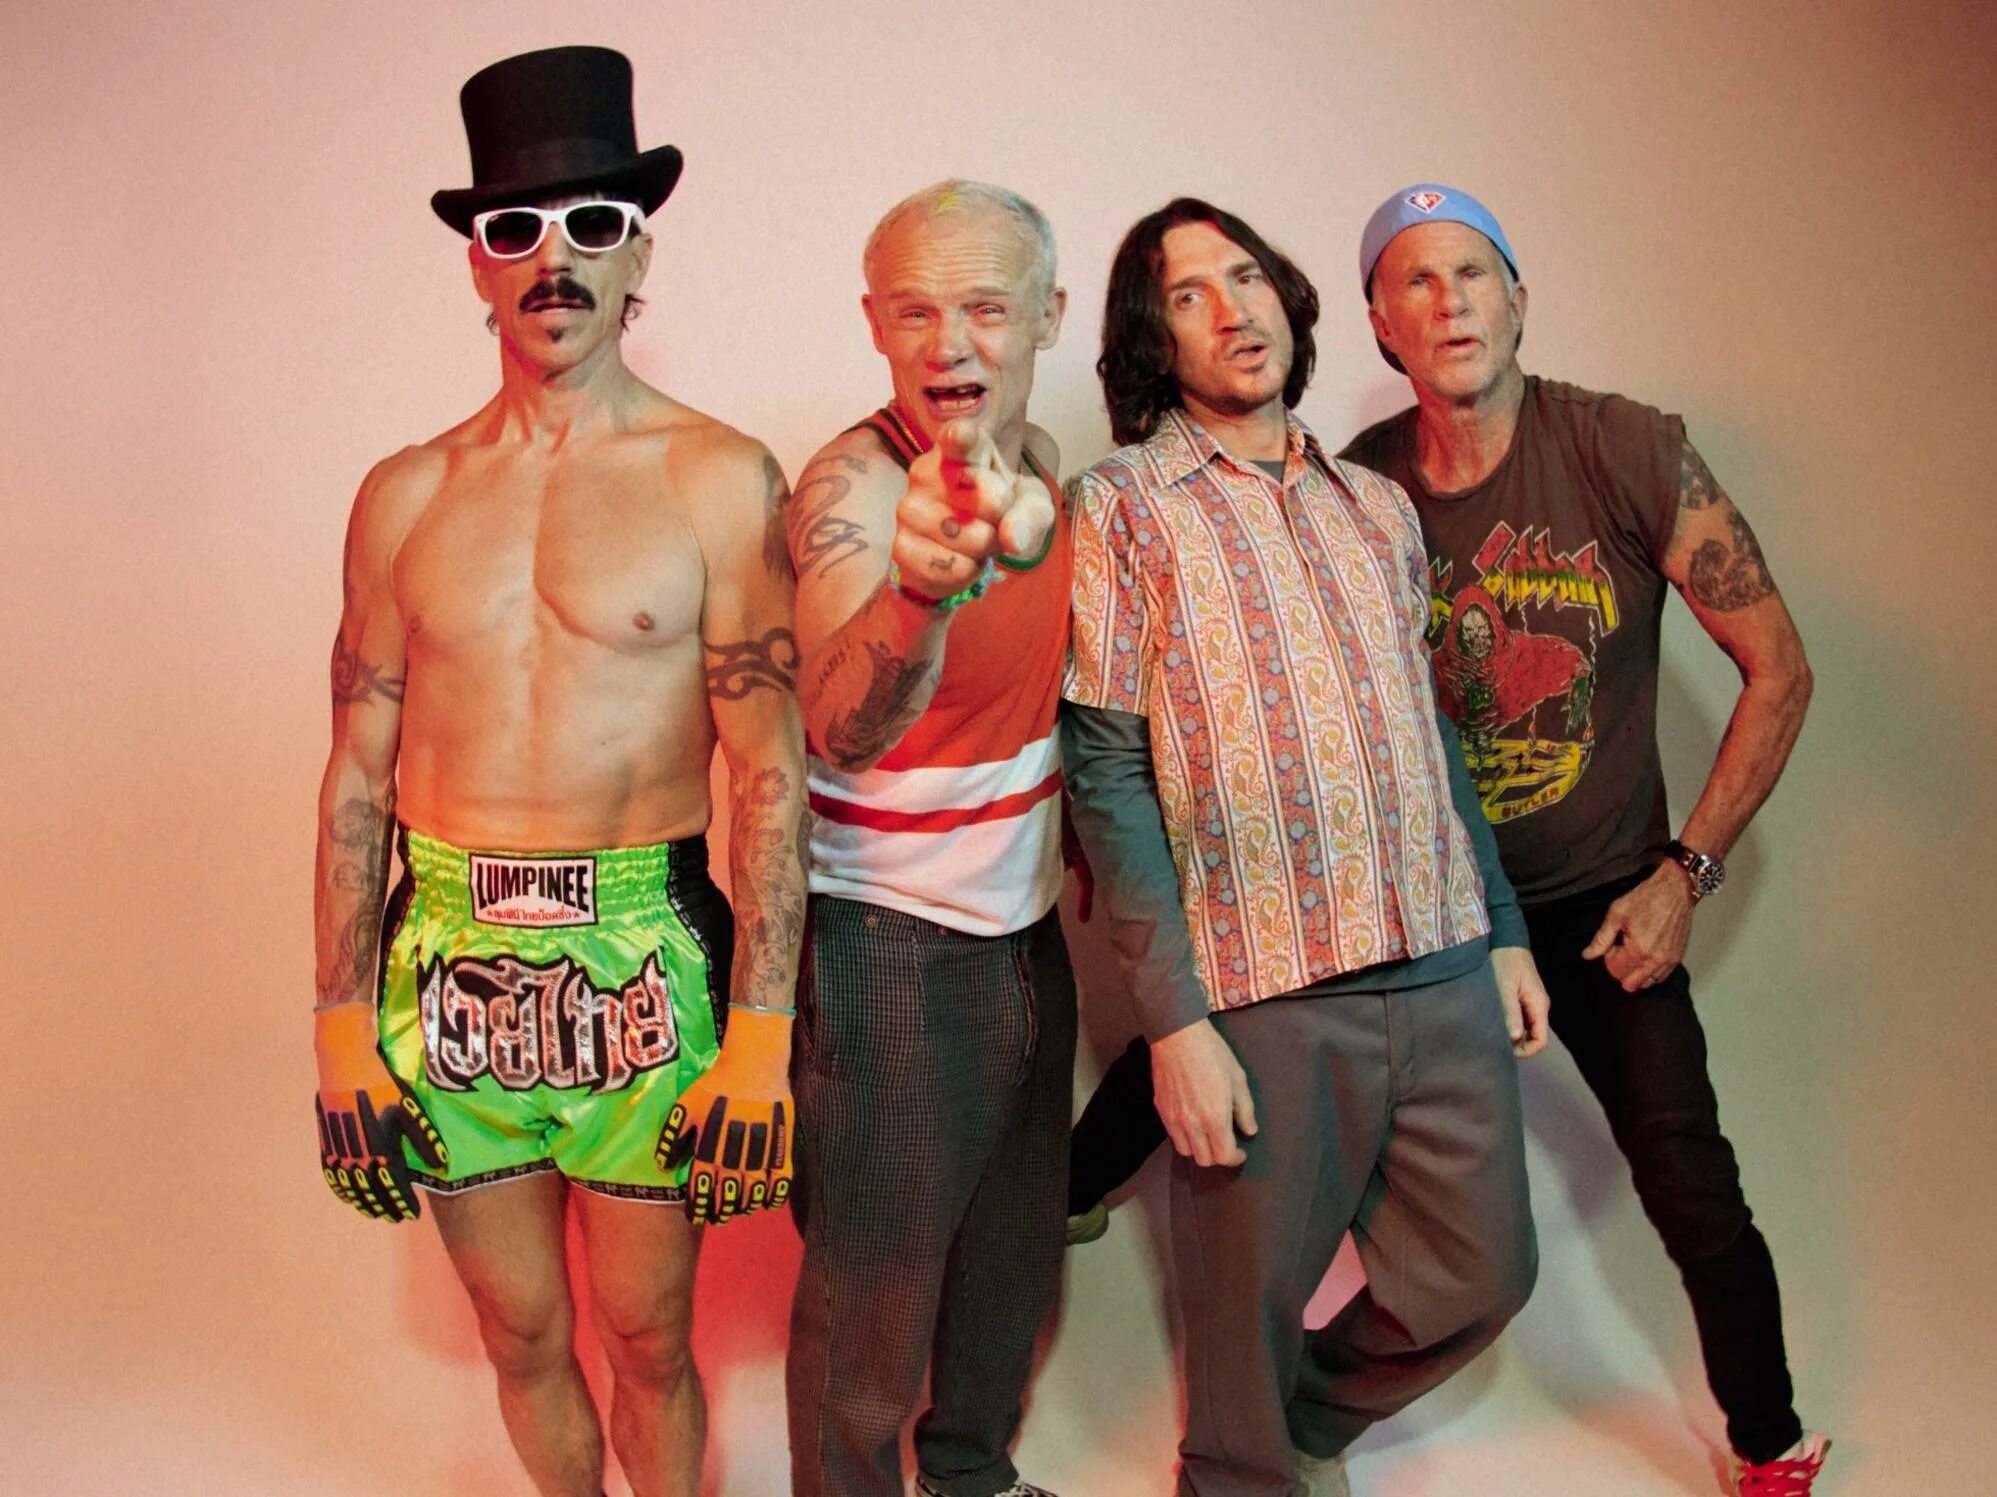 Ред хот Чили Пепперс. RHCP 1988. RHCP В 2001. Red hot Chili Peppers сейчас. Ред холи пеперс